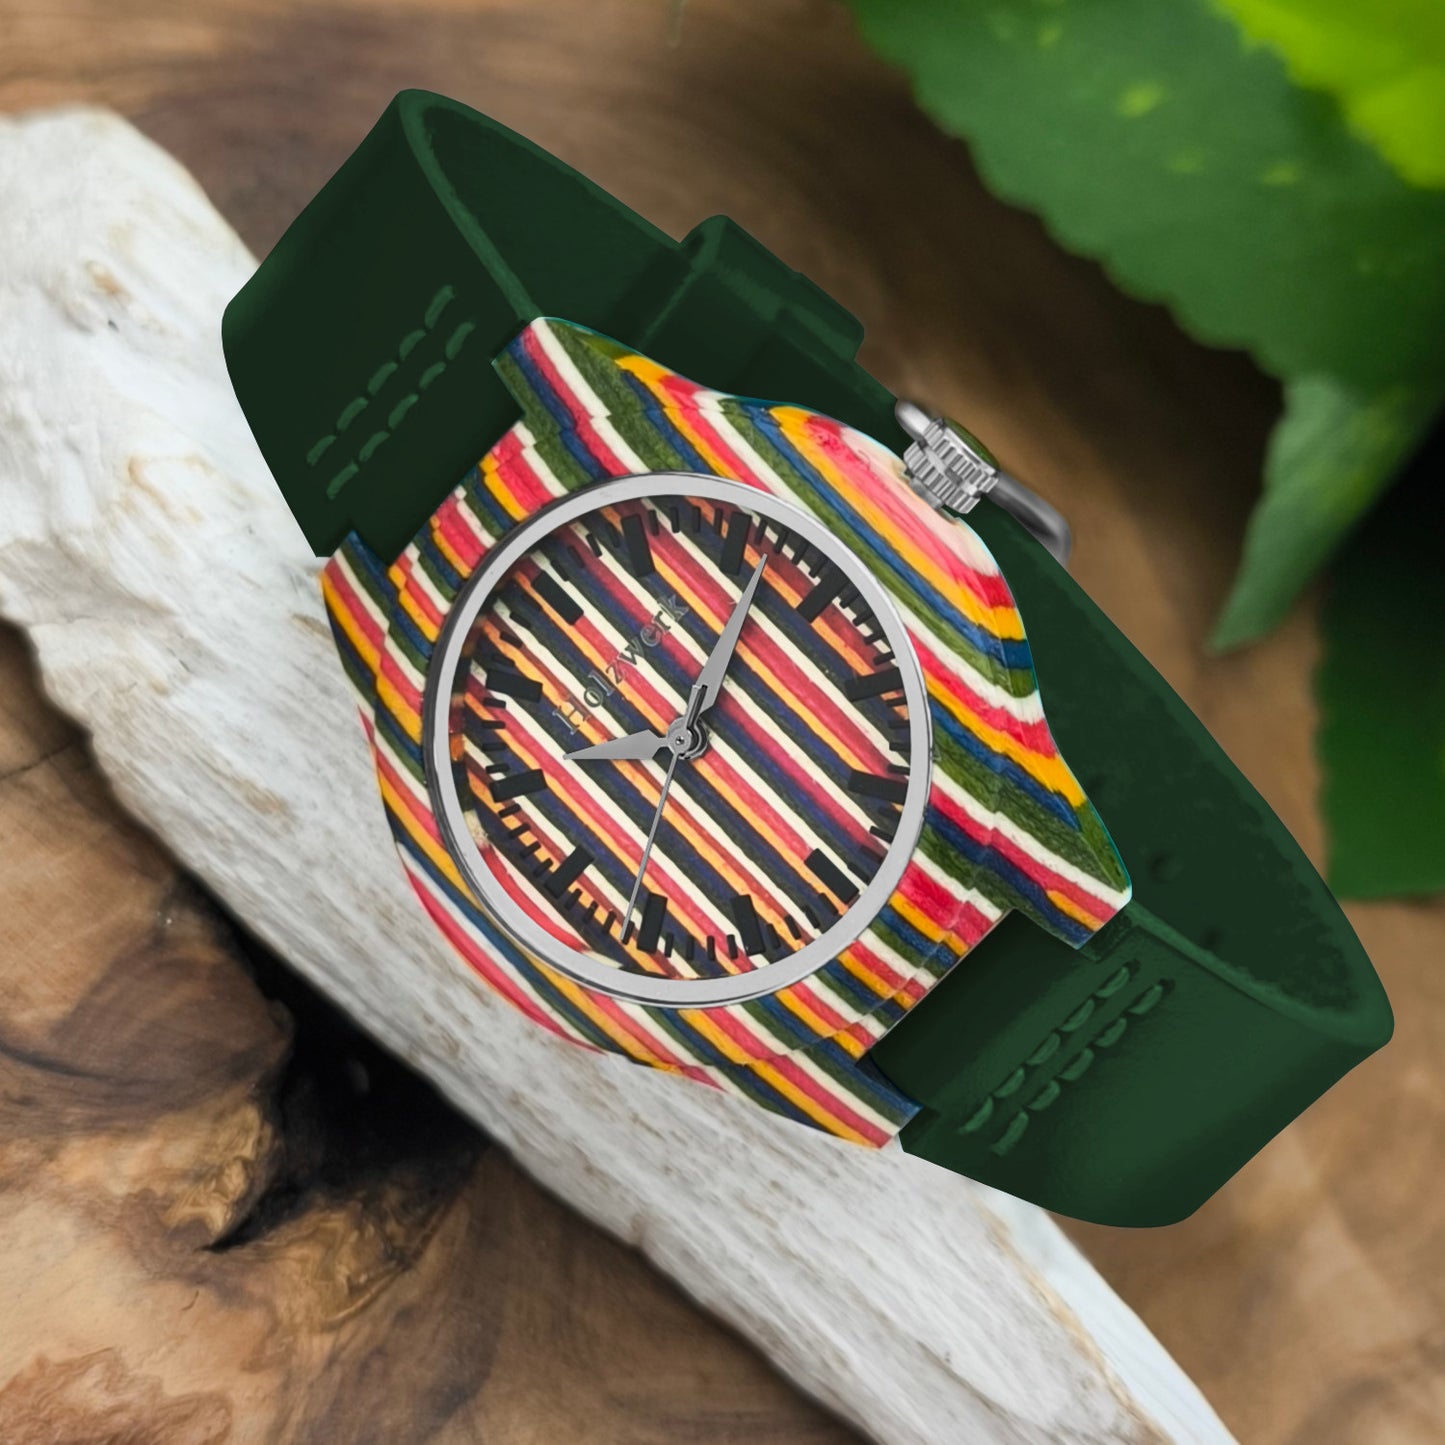 Holzwerk LINZ GREEN bunte kleine Regenbogen Damen und Kinder Armbanduhr, Holz & Leder Armband Uhr, LGBTQ Uhr, modische Holzuhr, dunkel grün, links liegend